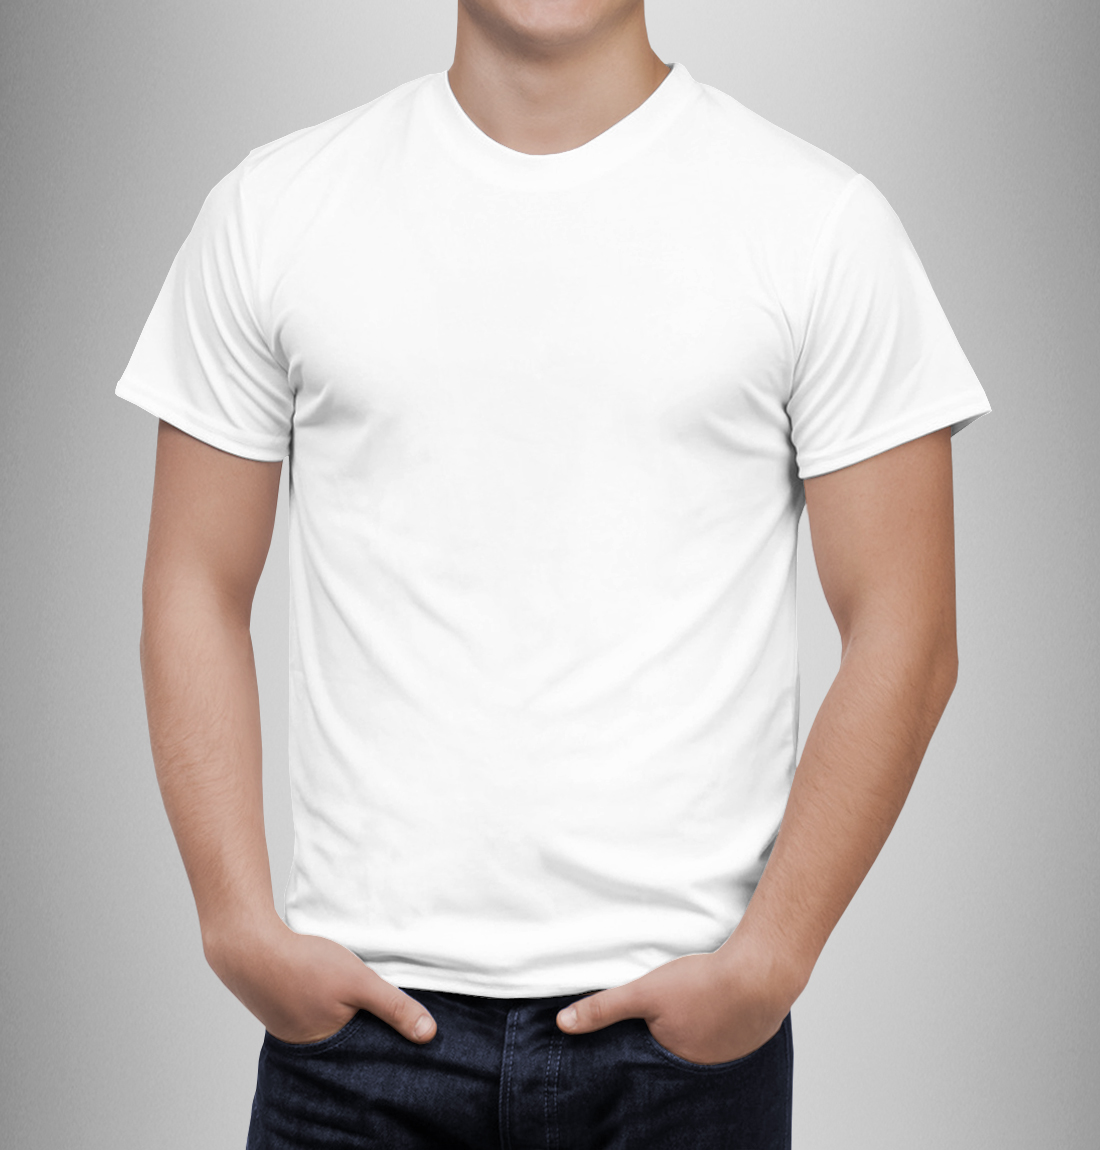 Мужская белая футболка размер 42-58 (стоимость без нанесения) - pechati22